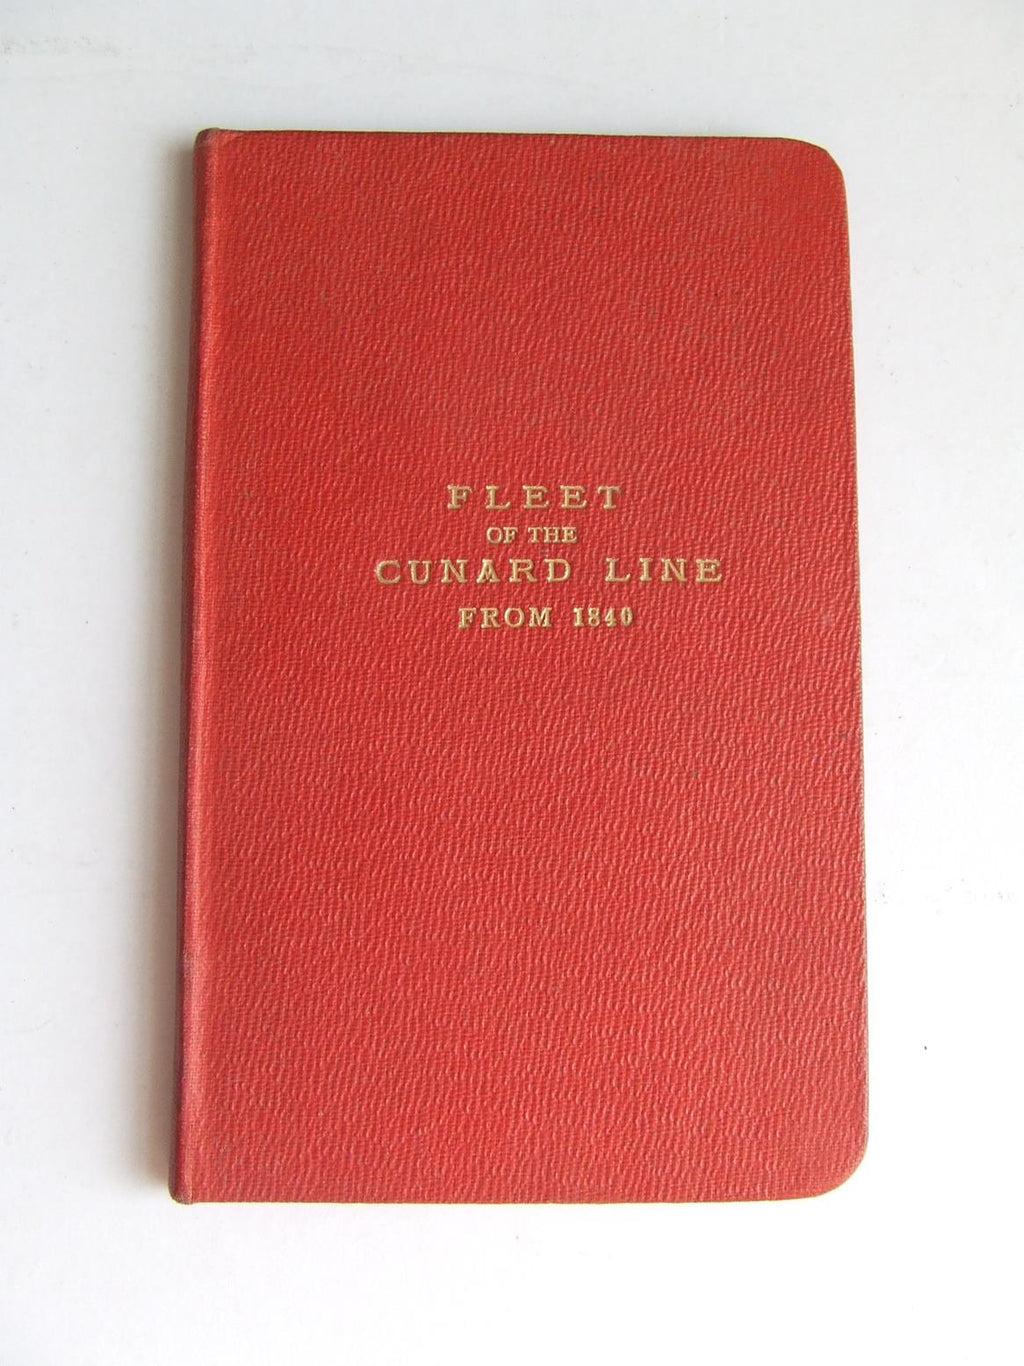 Fleet of the Cunard Line from 1840 - manuscript